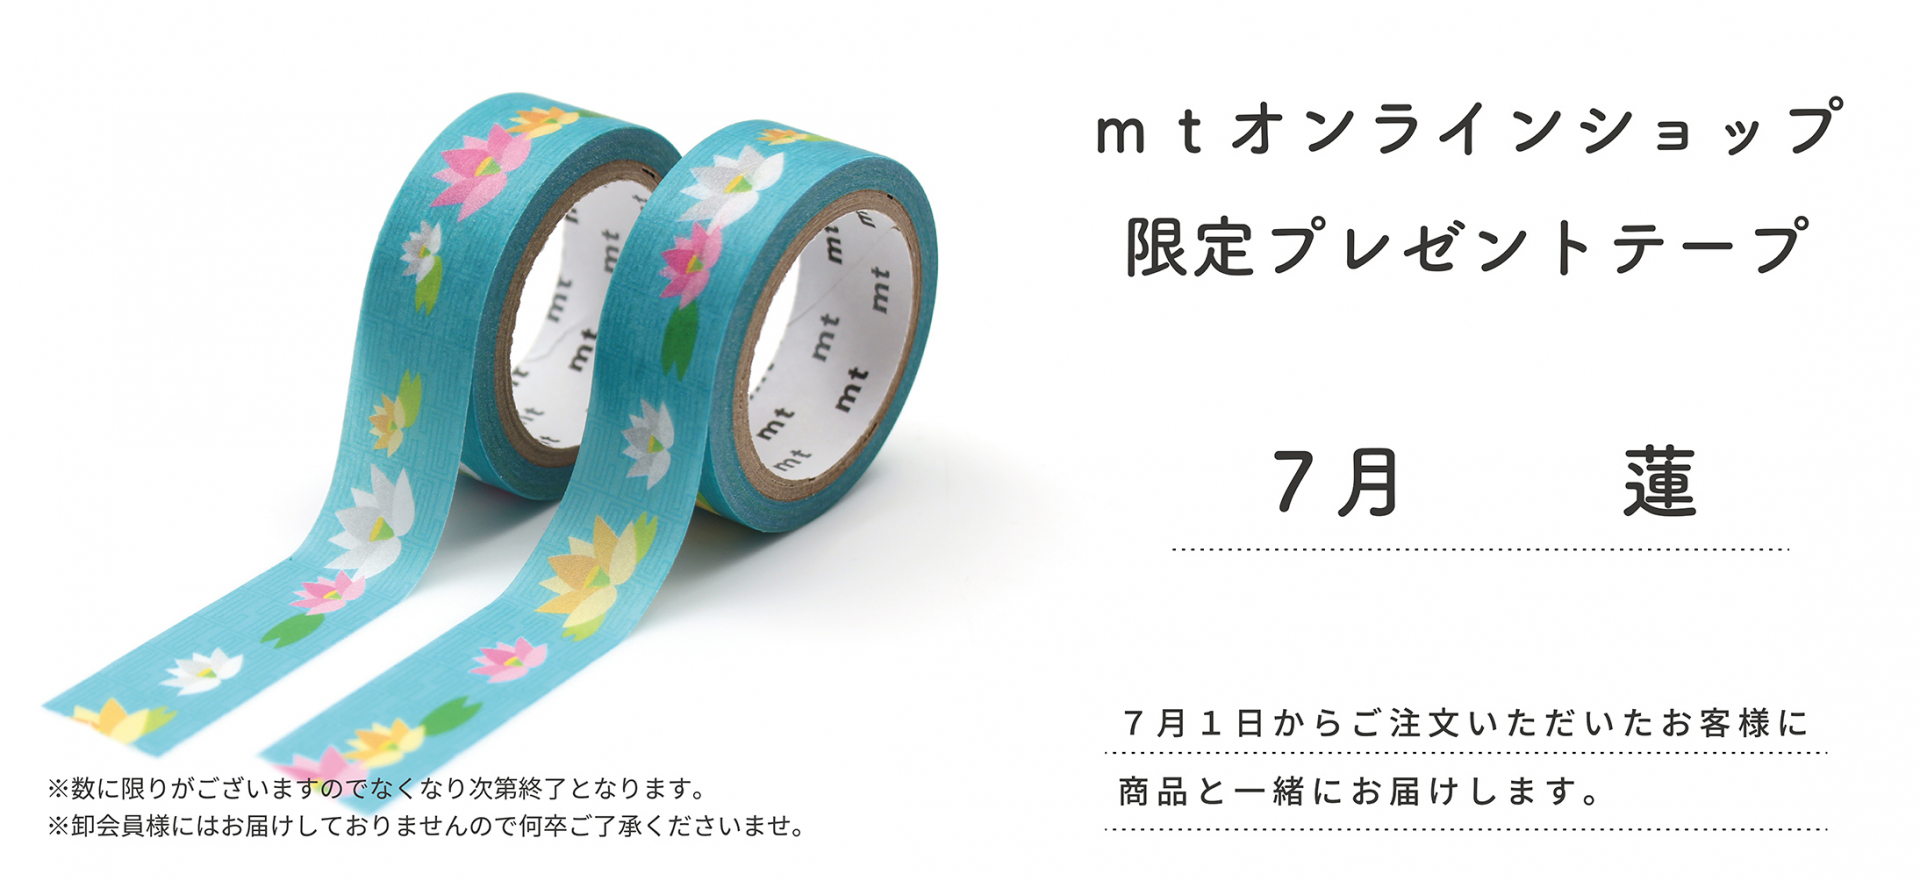 mt 名古屋 金沢 富岡マステ 限定マスキングテープ - 事務用品